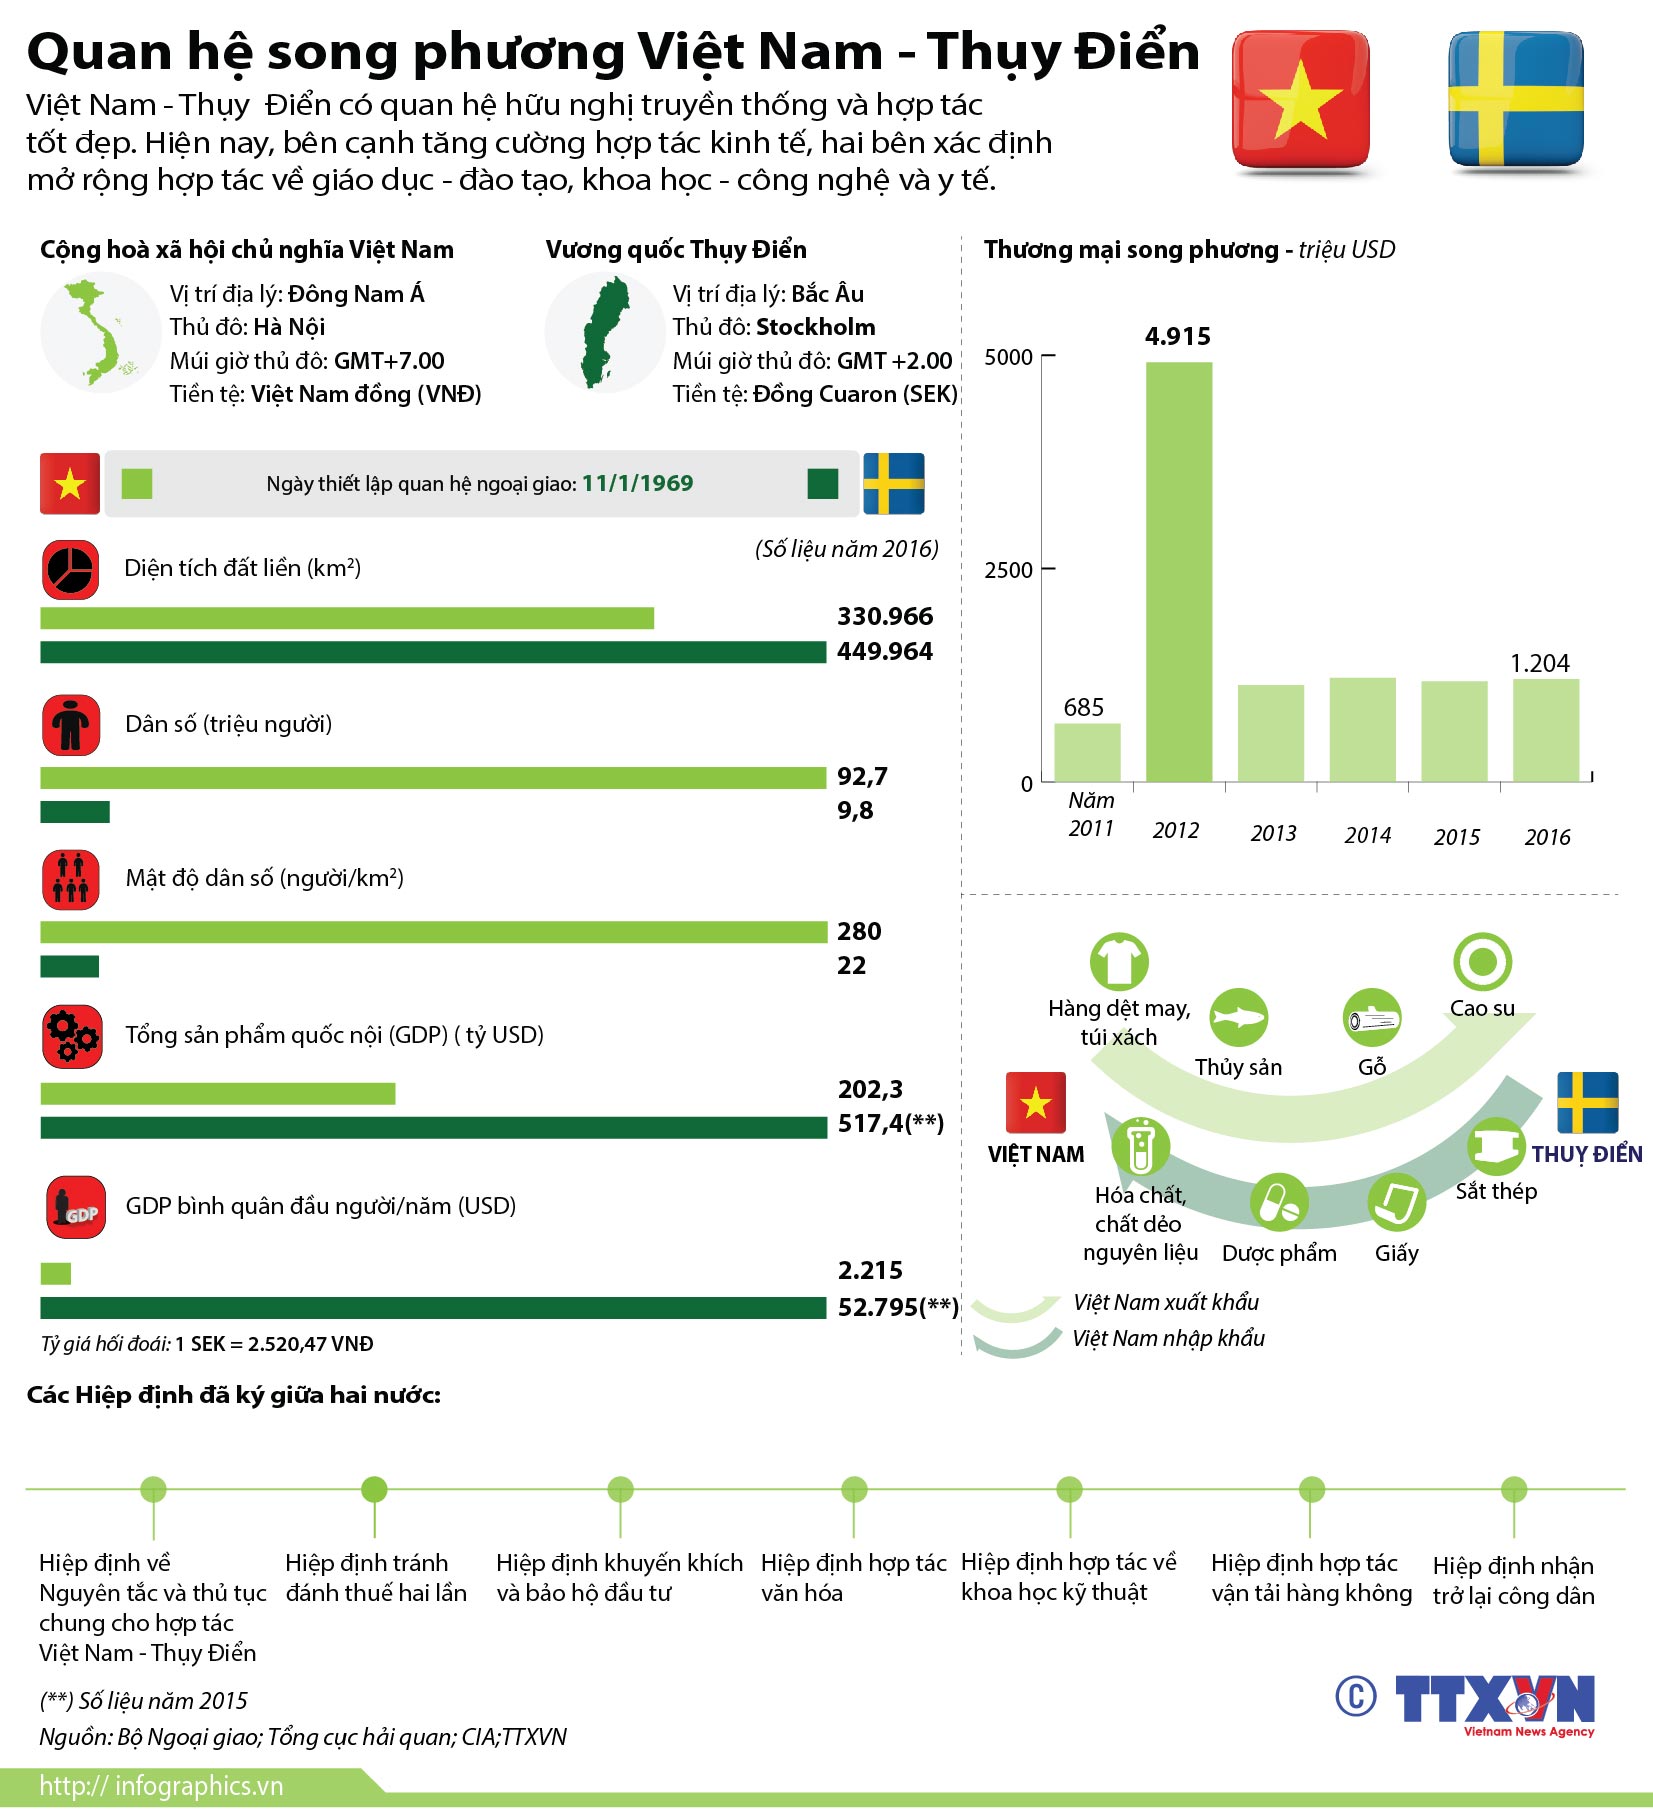 Quan hệ song phương Việt Nam - Thụy Điển